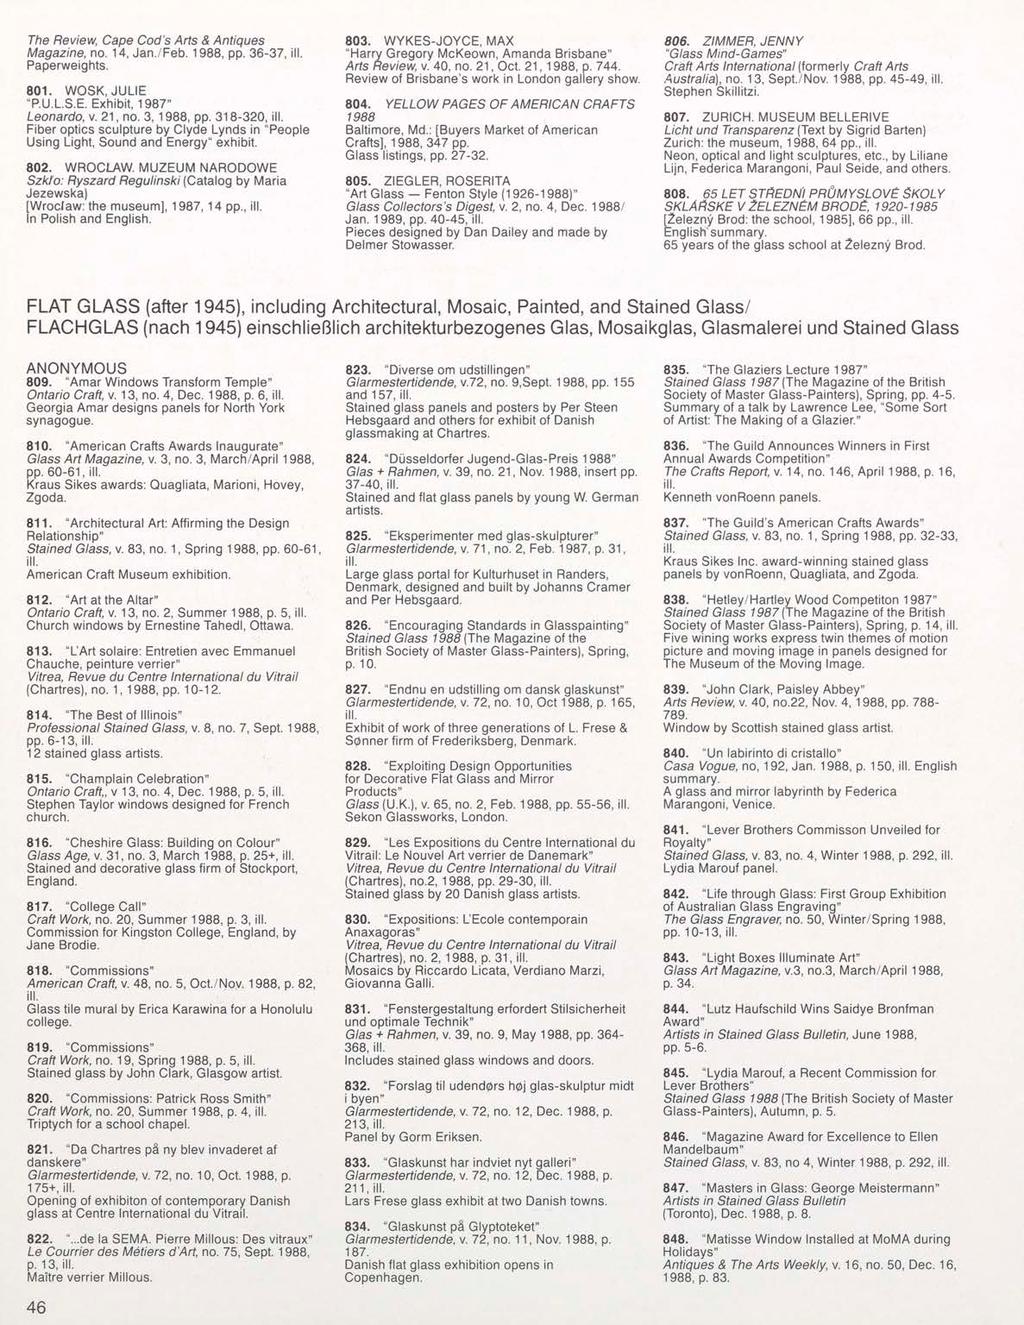 The Review, Cape Cod's Arts & Antiques Magazine, no. 14, Jan./Feb. 1988, pp. 36-37, Paperweights. 801. WOSK, JULIE "P.U.L.S.E. Exhibit, 1987" Leonardo, v. 21, no. 3, 1988, pp.